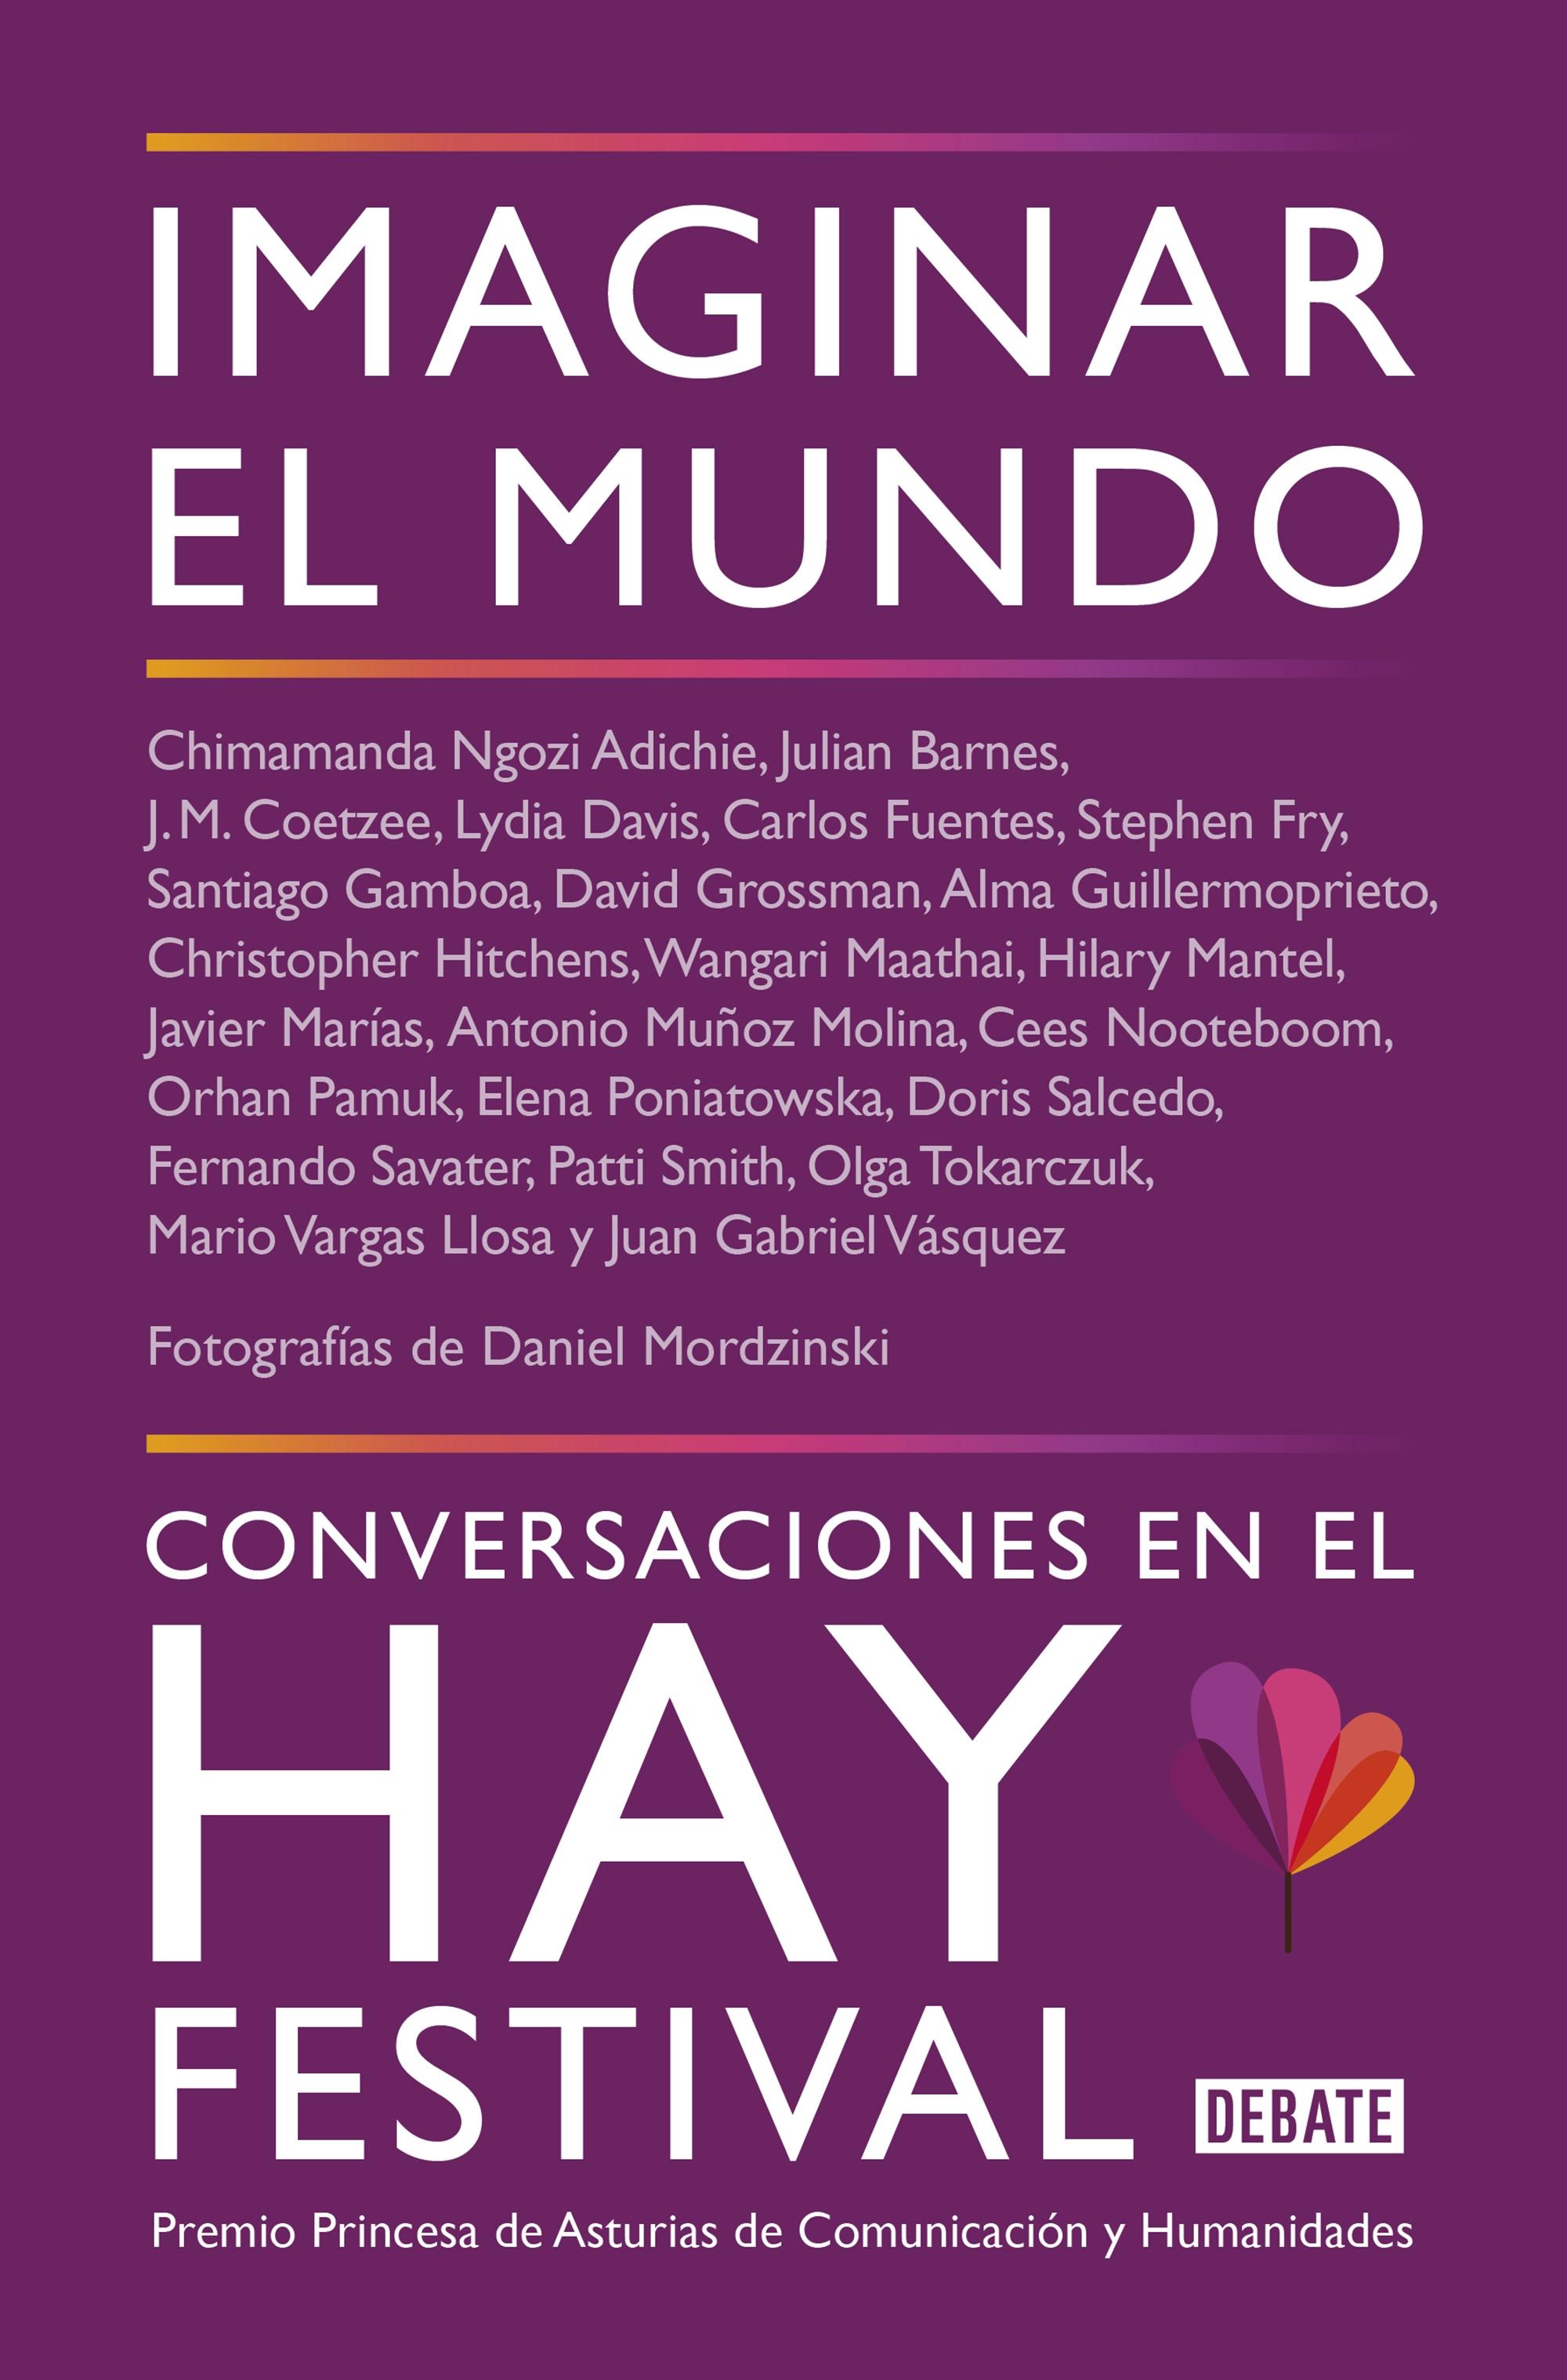 Imaginar el Mundo "Conversaciones en el Hay Festival"